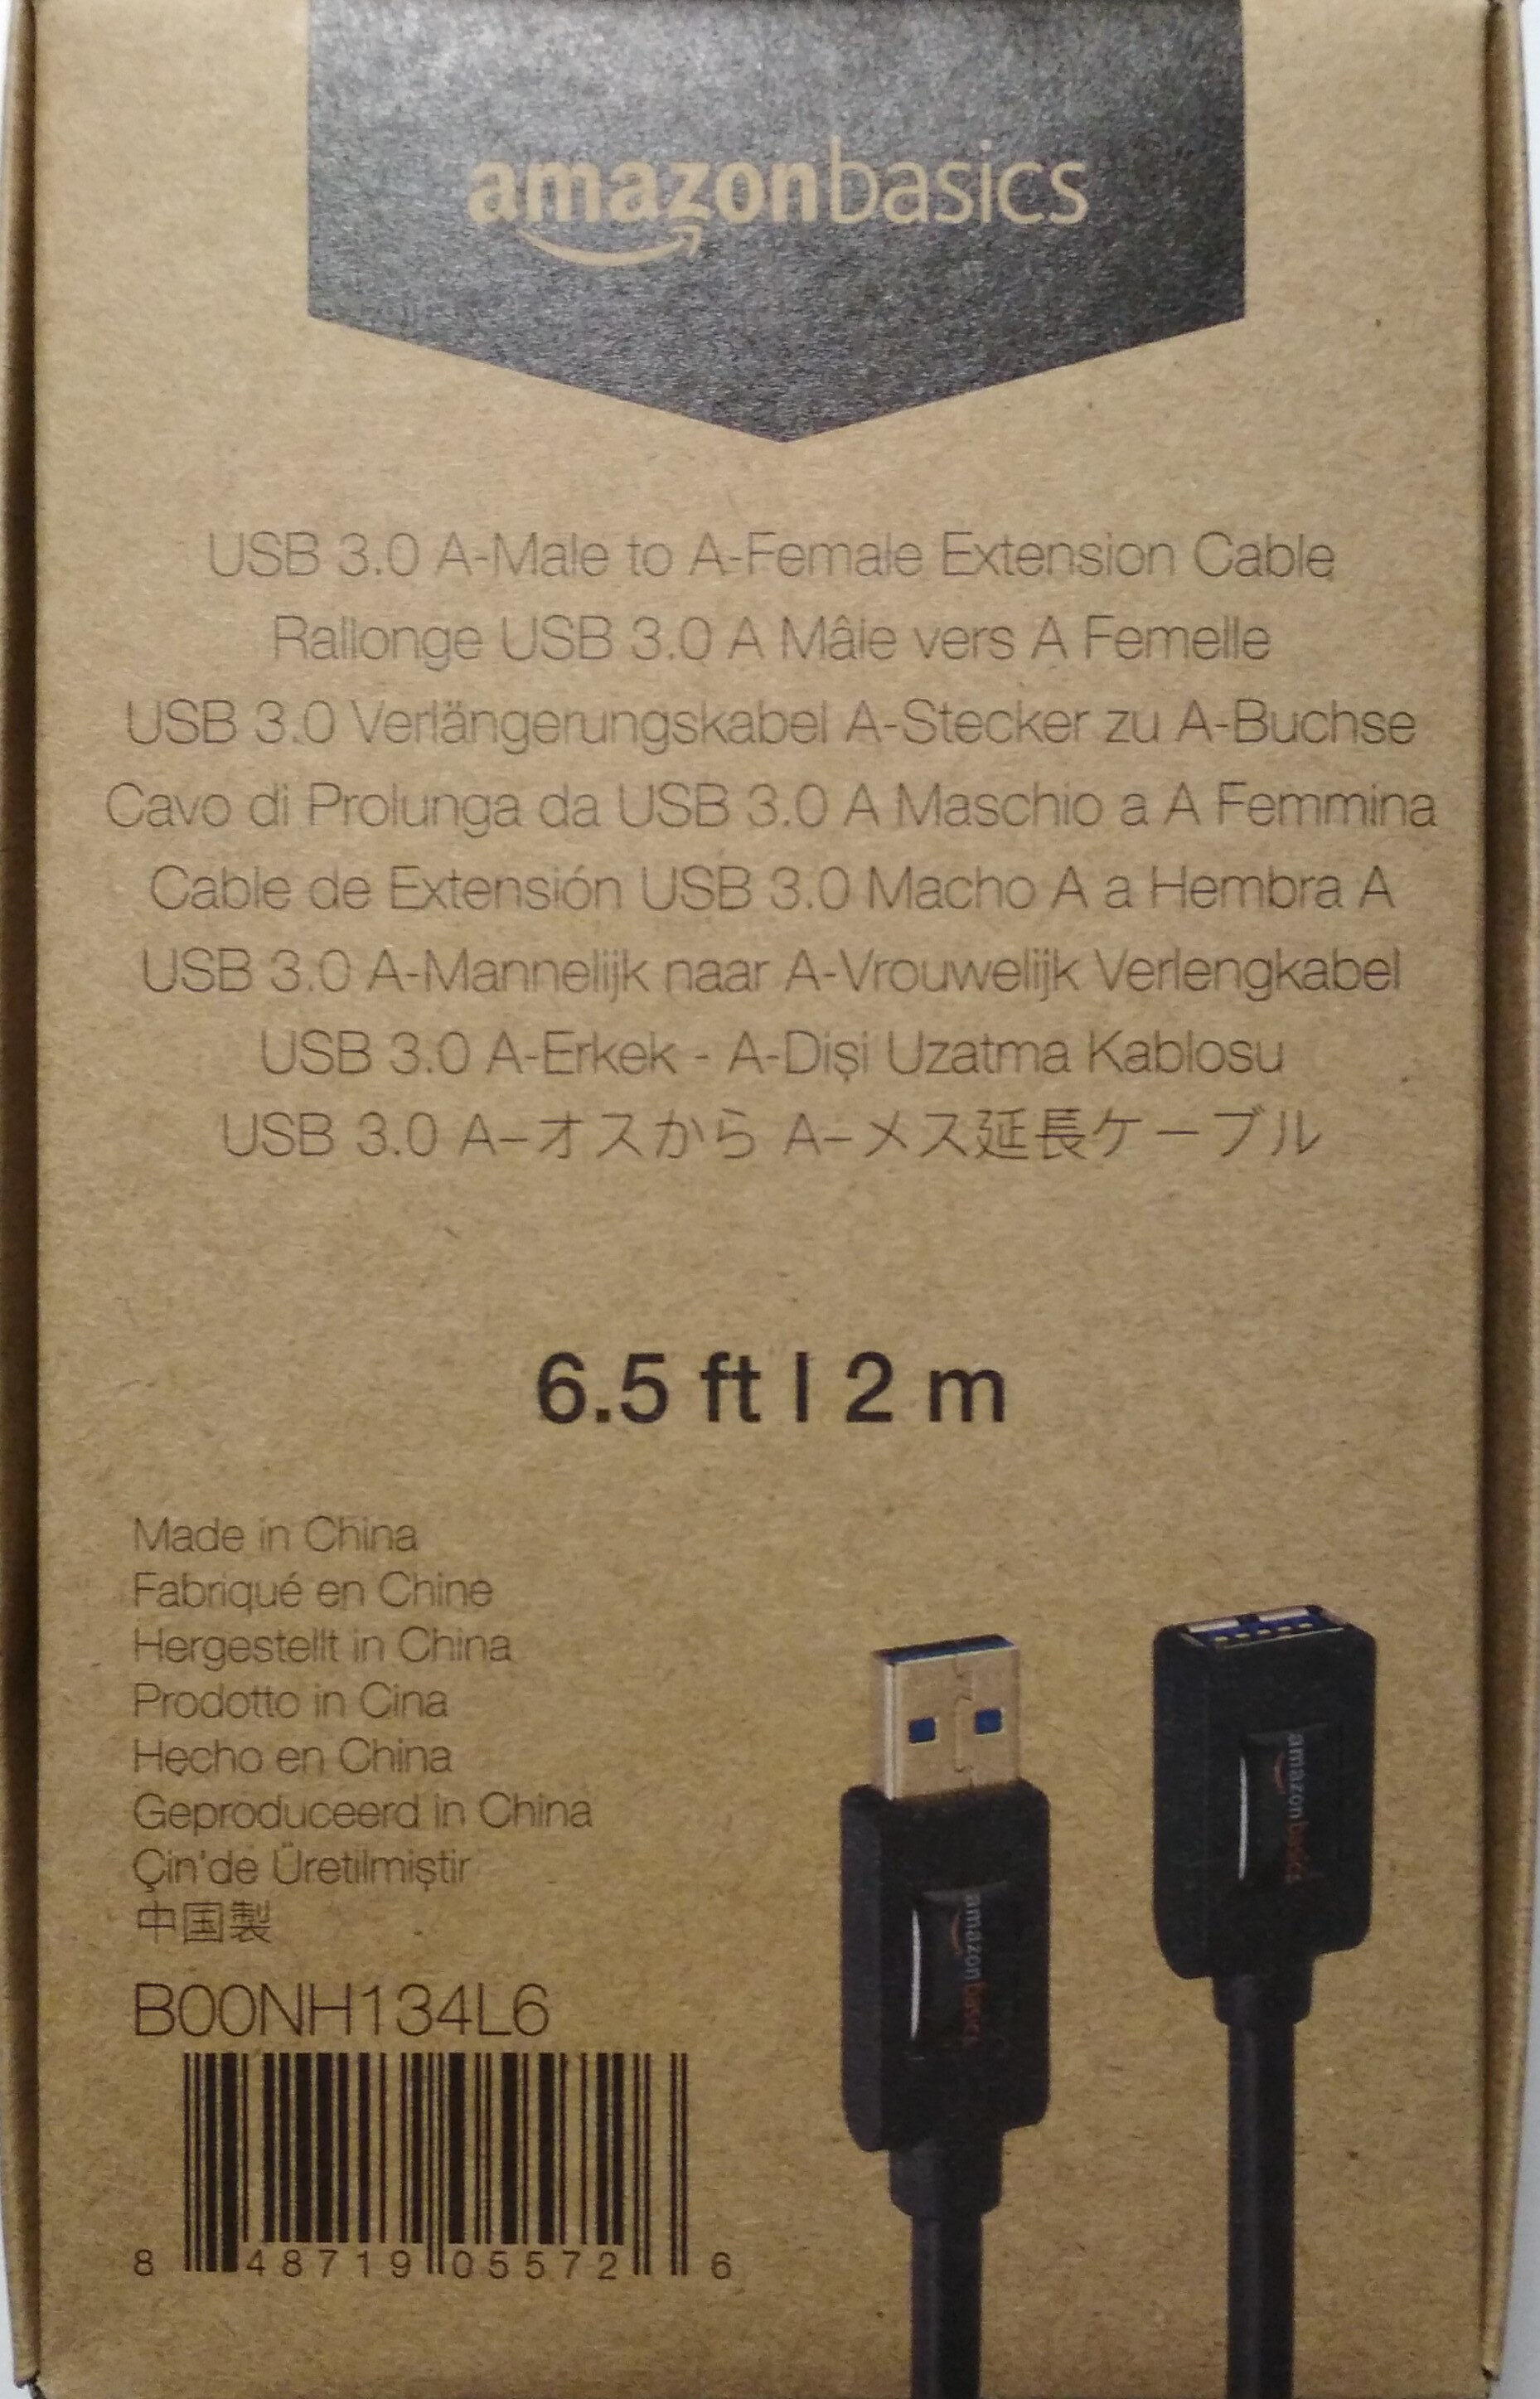 USB 3.0 Verlängerungskabel A-Stecker zu A-Buchse - Product - de